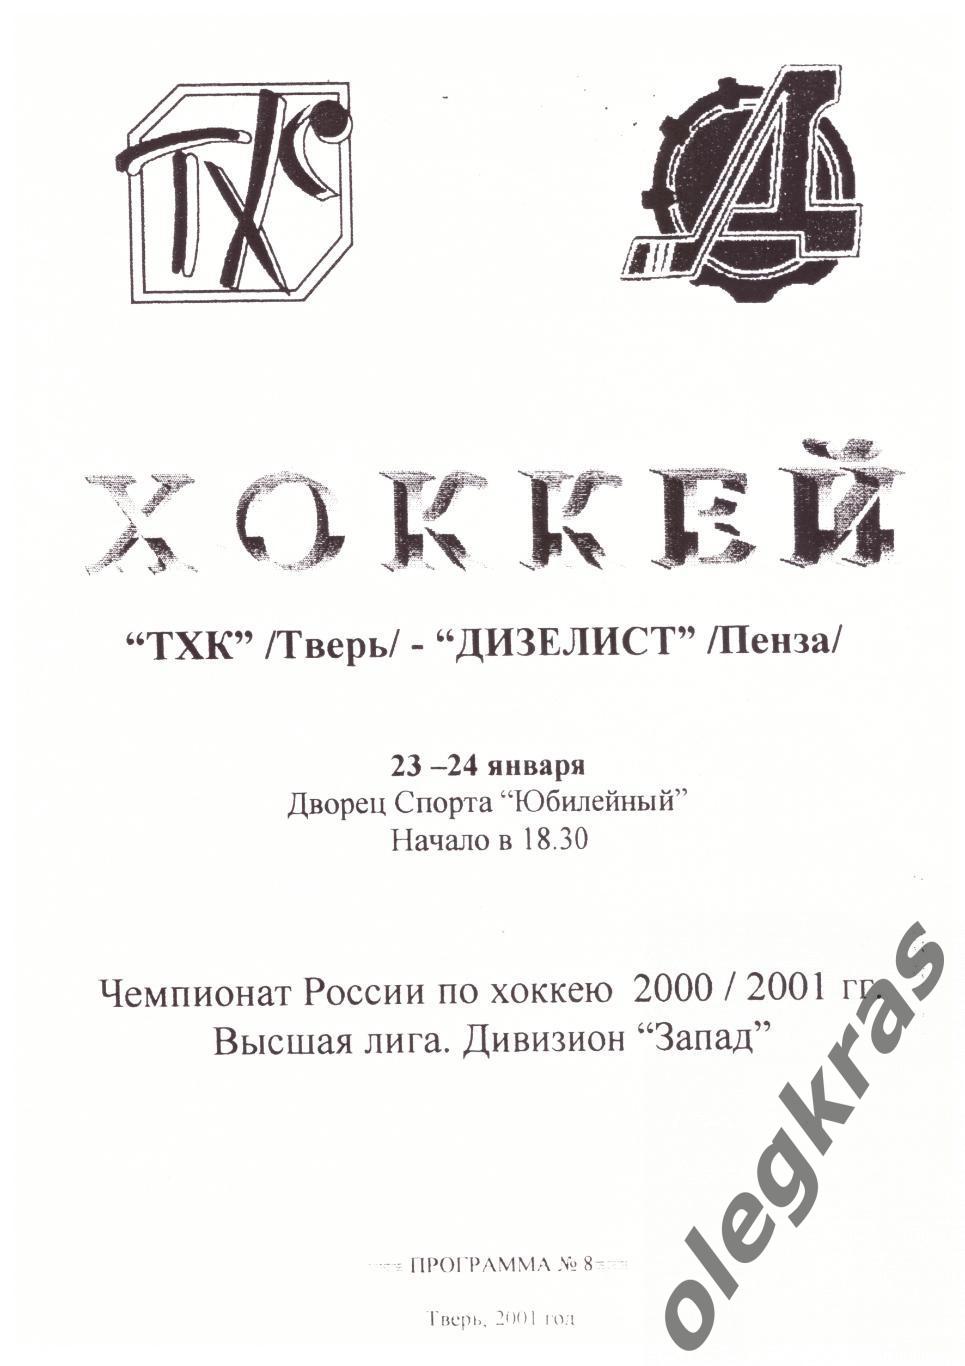 ТХК(Тверь) - Дизелист(Пенза) - 23-24 января 2001 года.